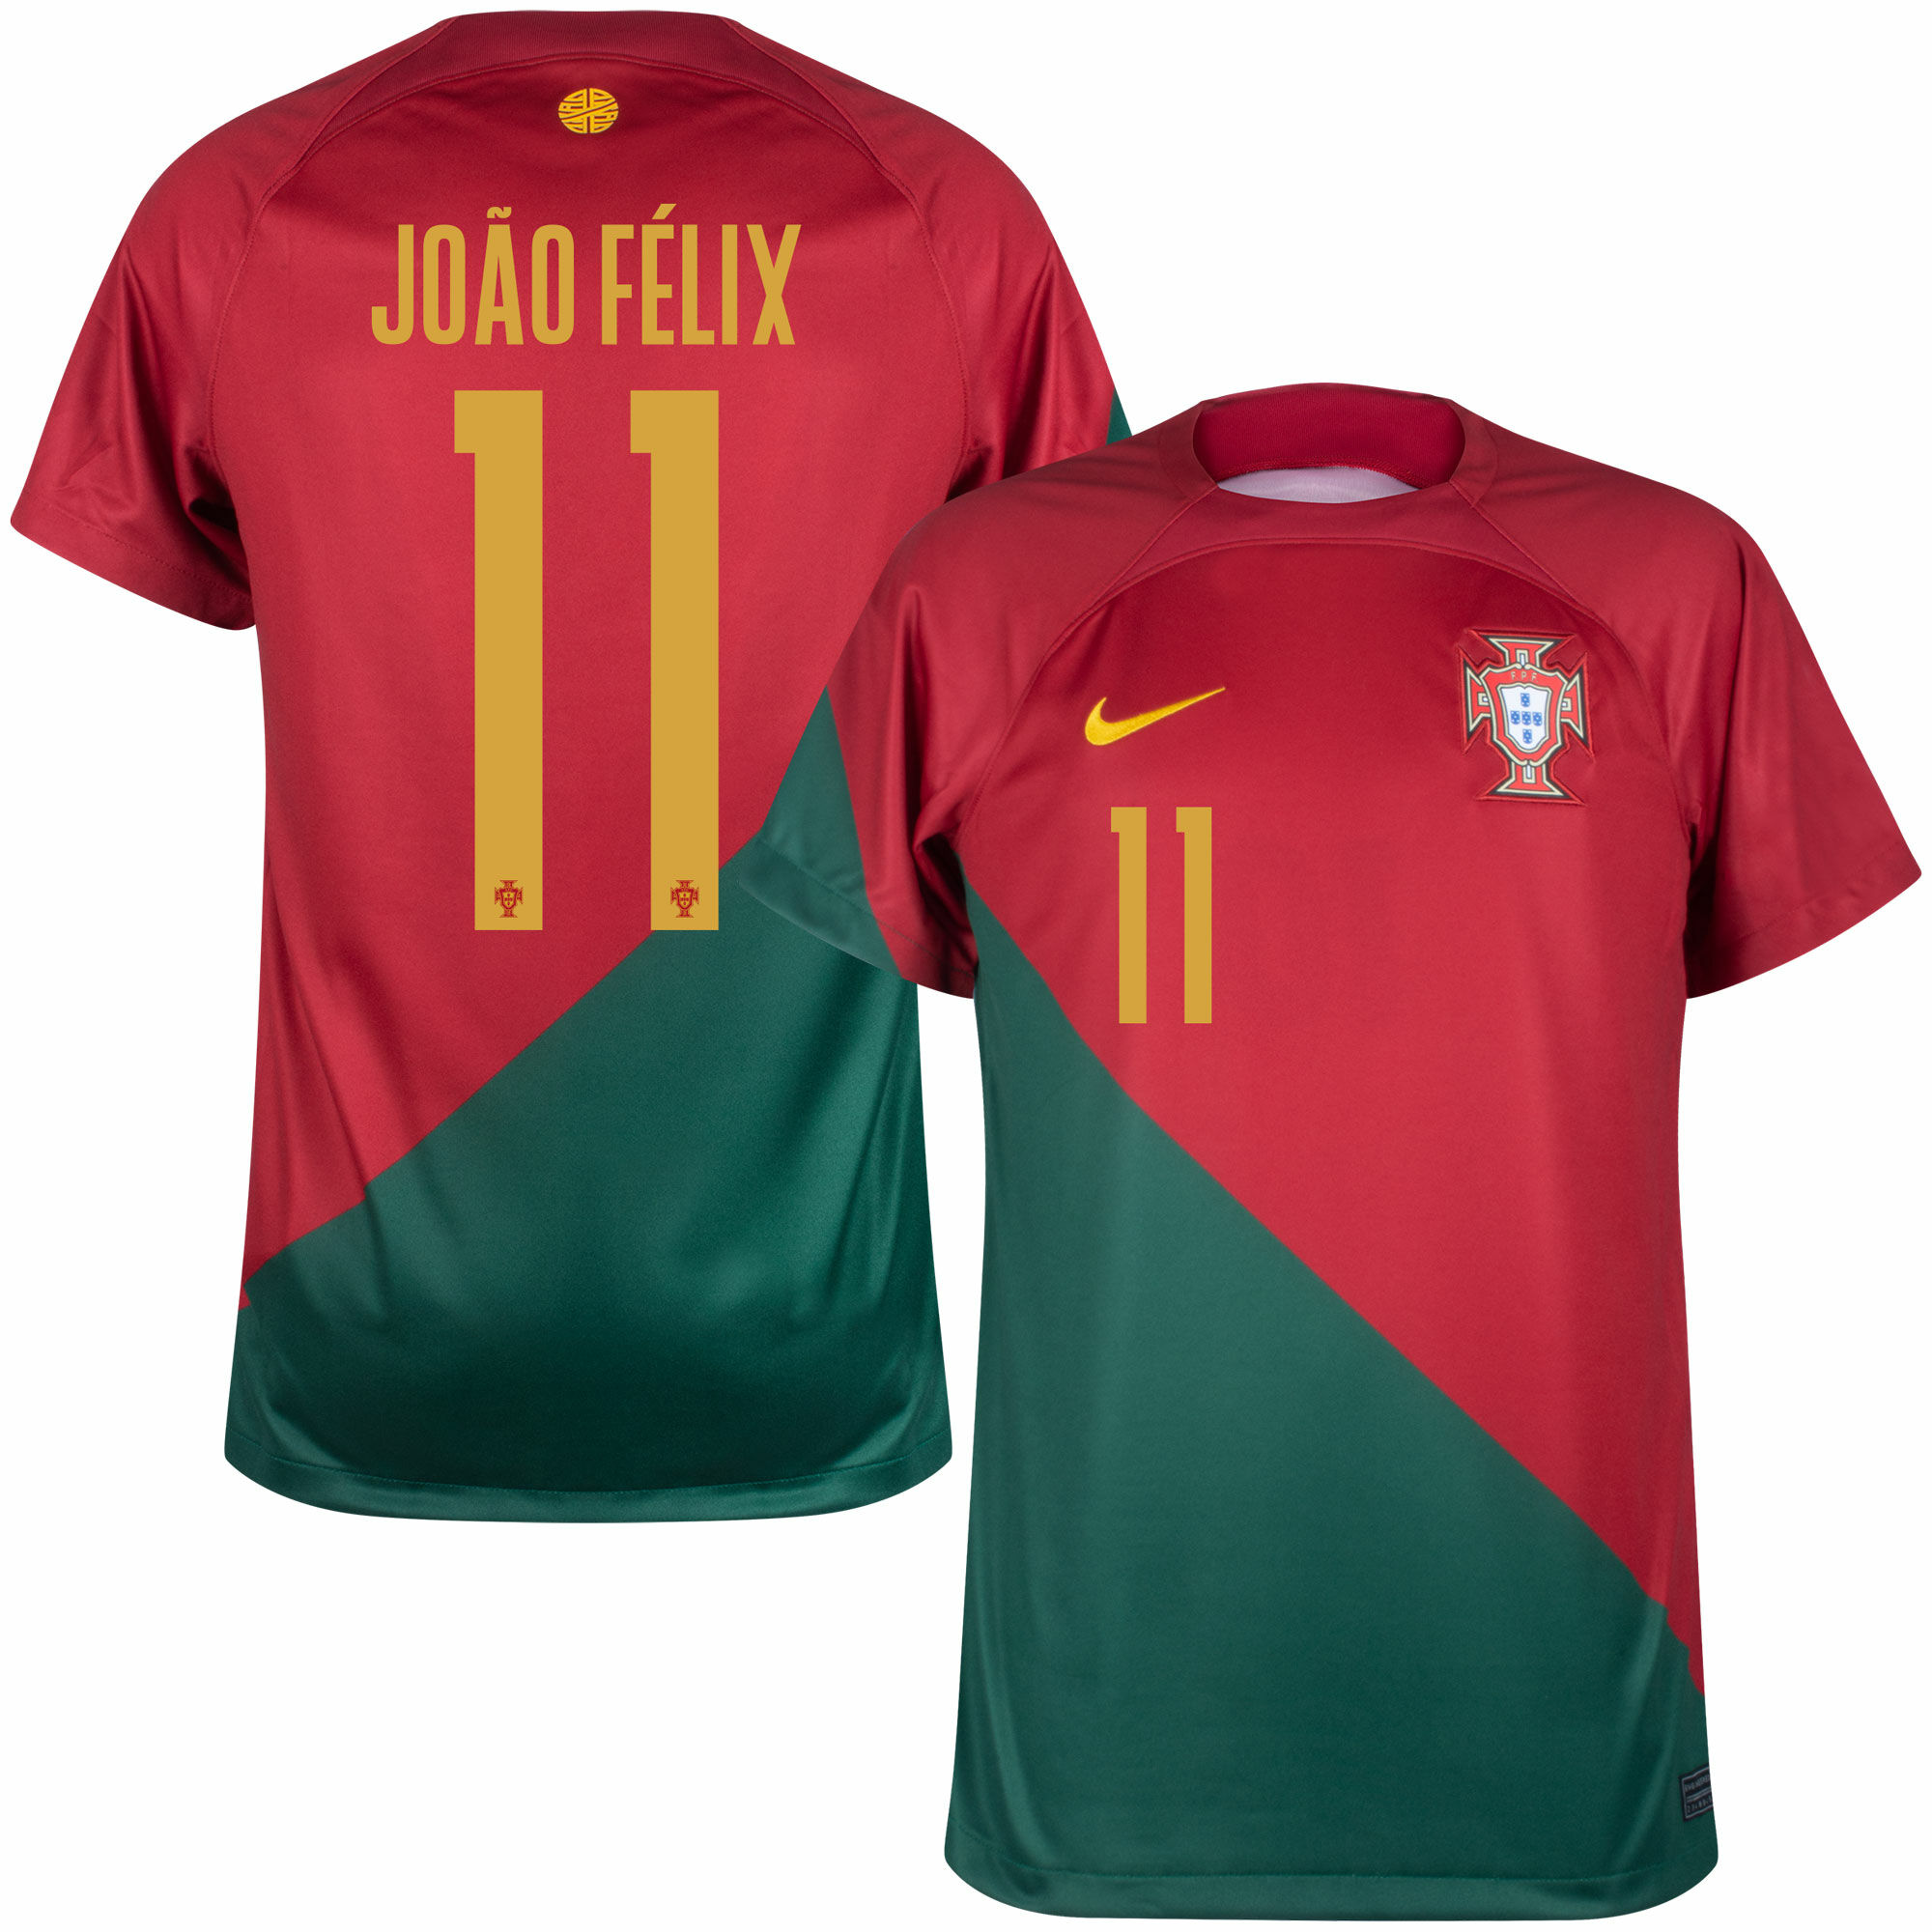 Portugalsko - Dres fotbalový - vínový, oficiální potisk, číslo 11, domácí, sezóna 2022/23, João Félix